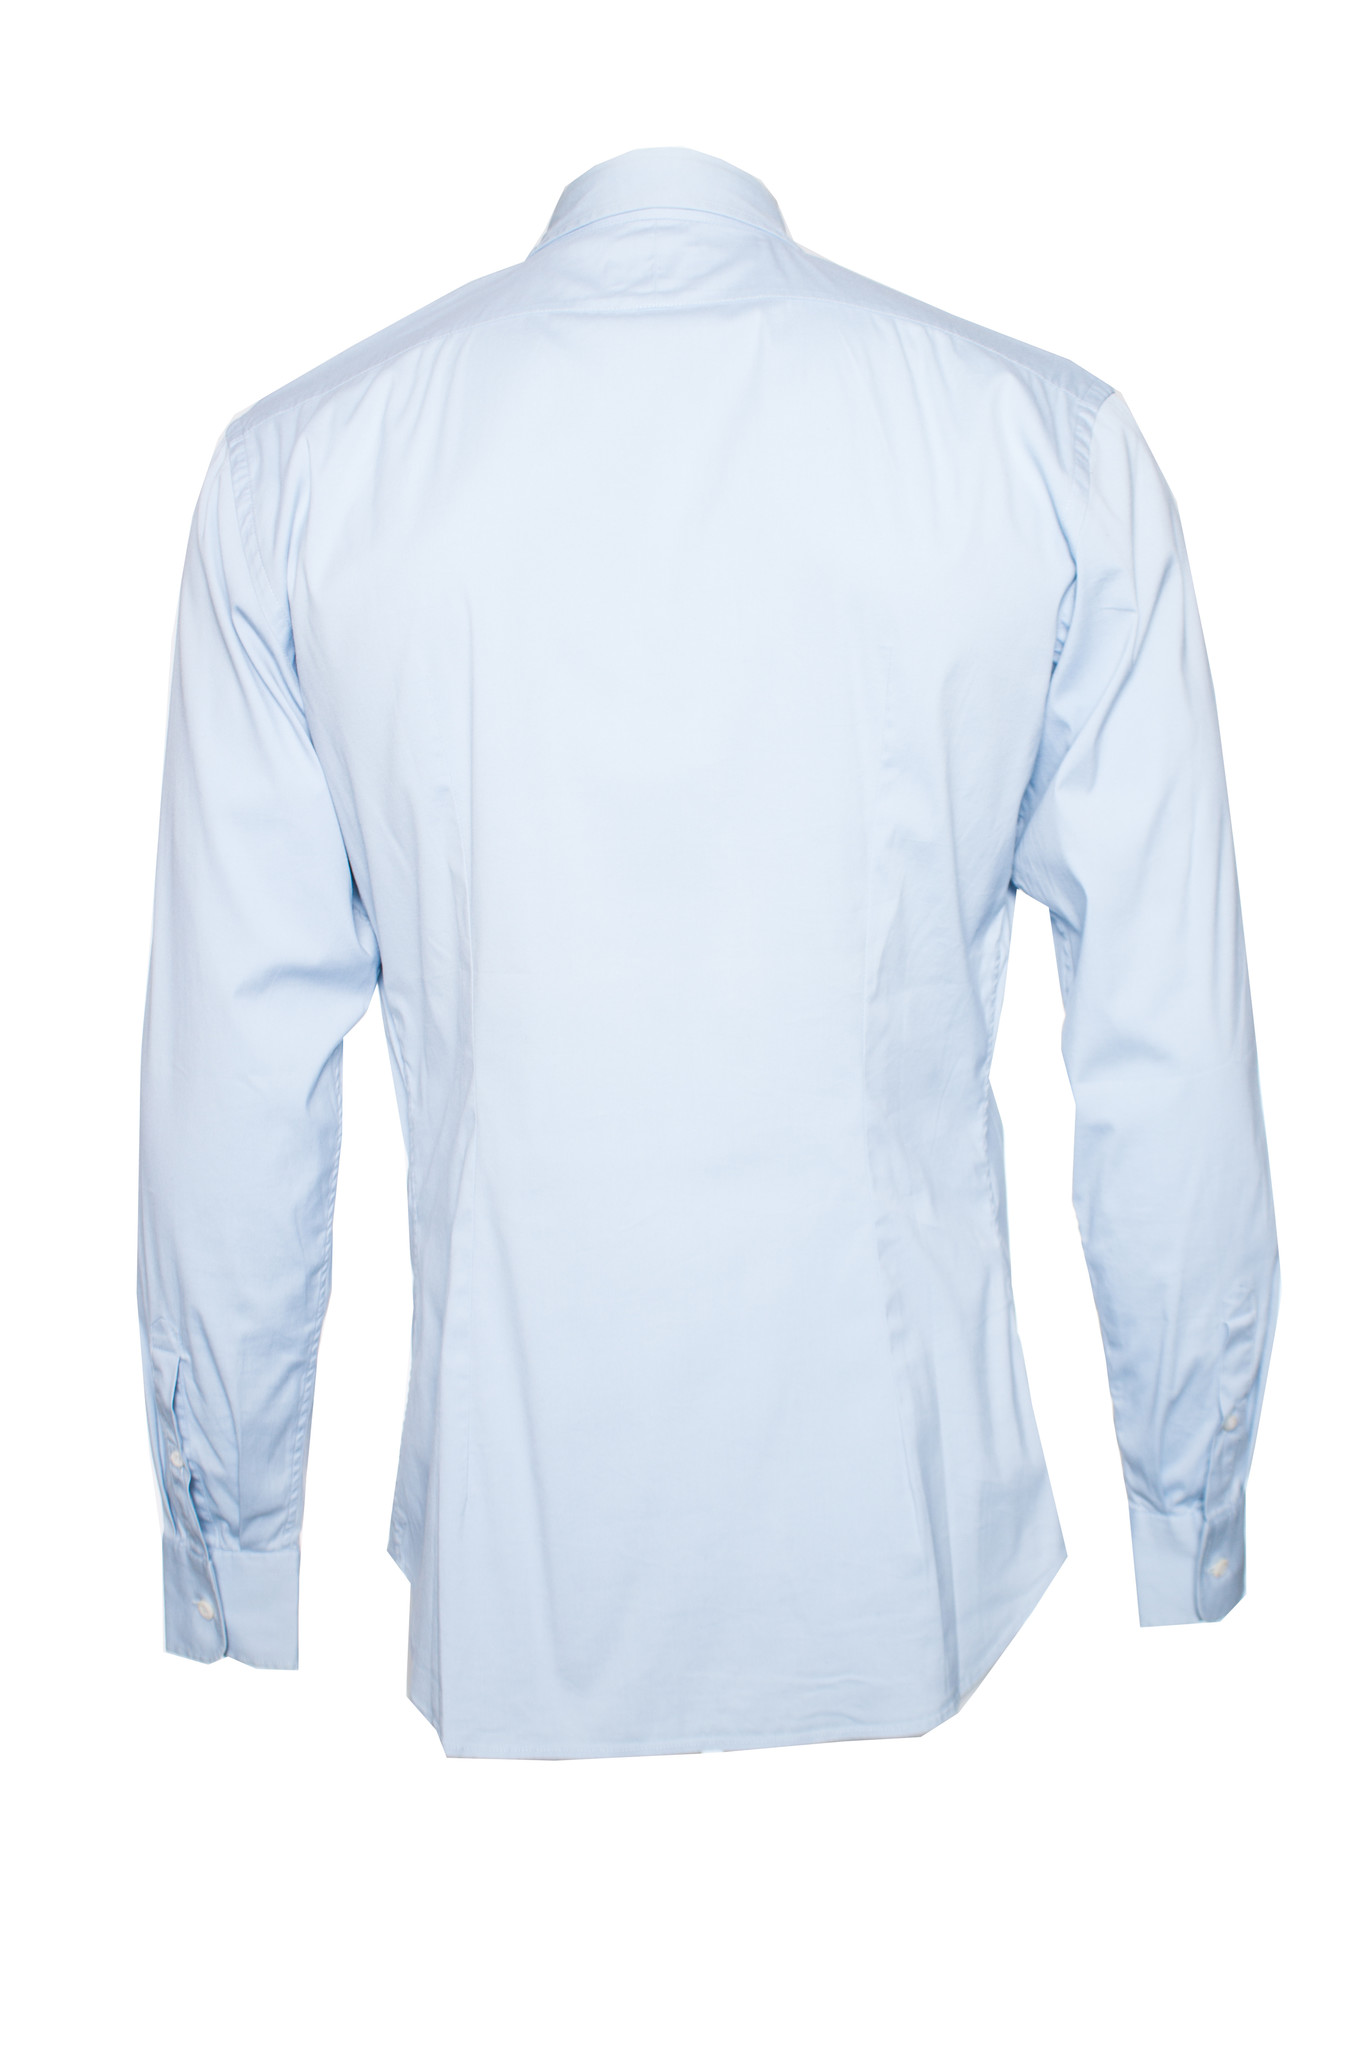 Prada, light blue shirt in size 40-15 3/4 (M). - Unique Designer Pieces